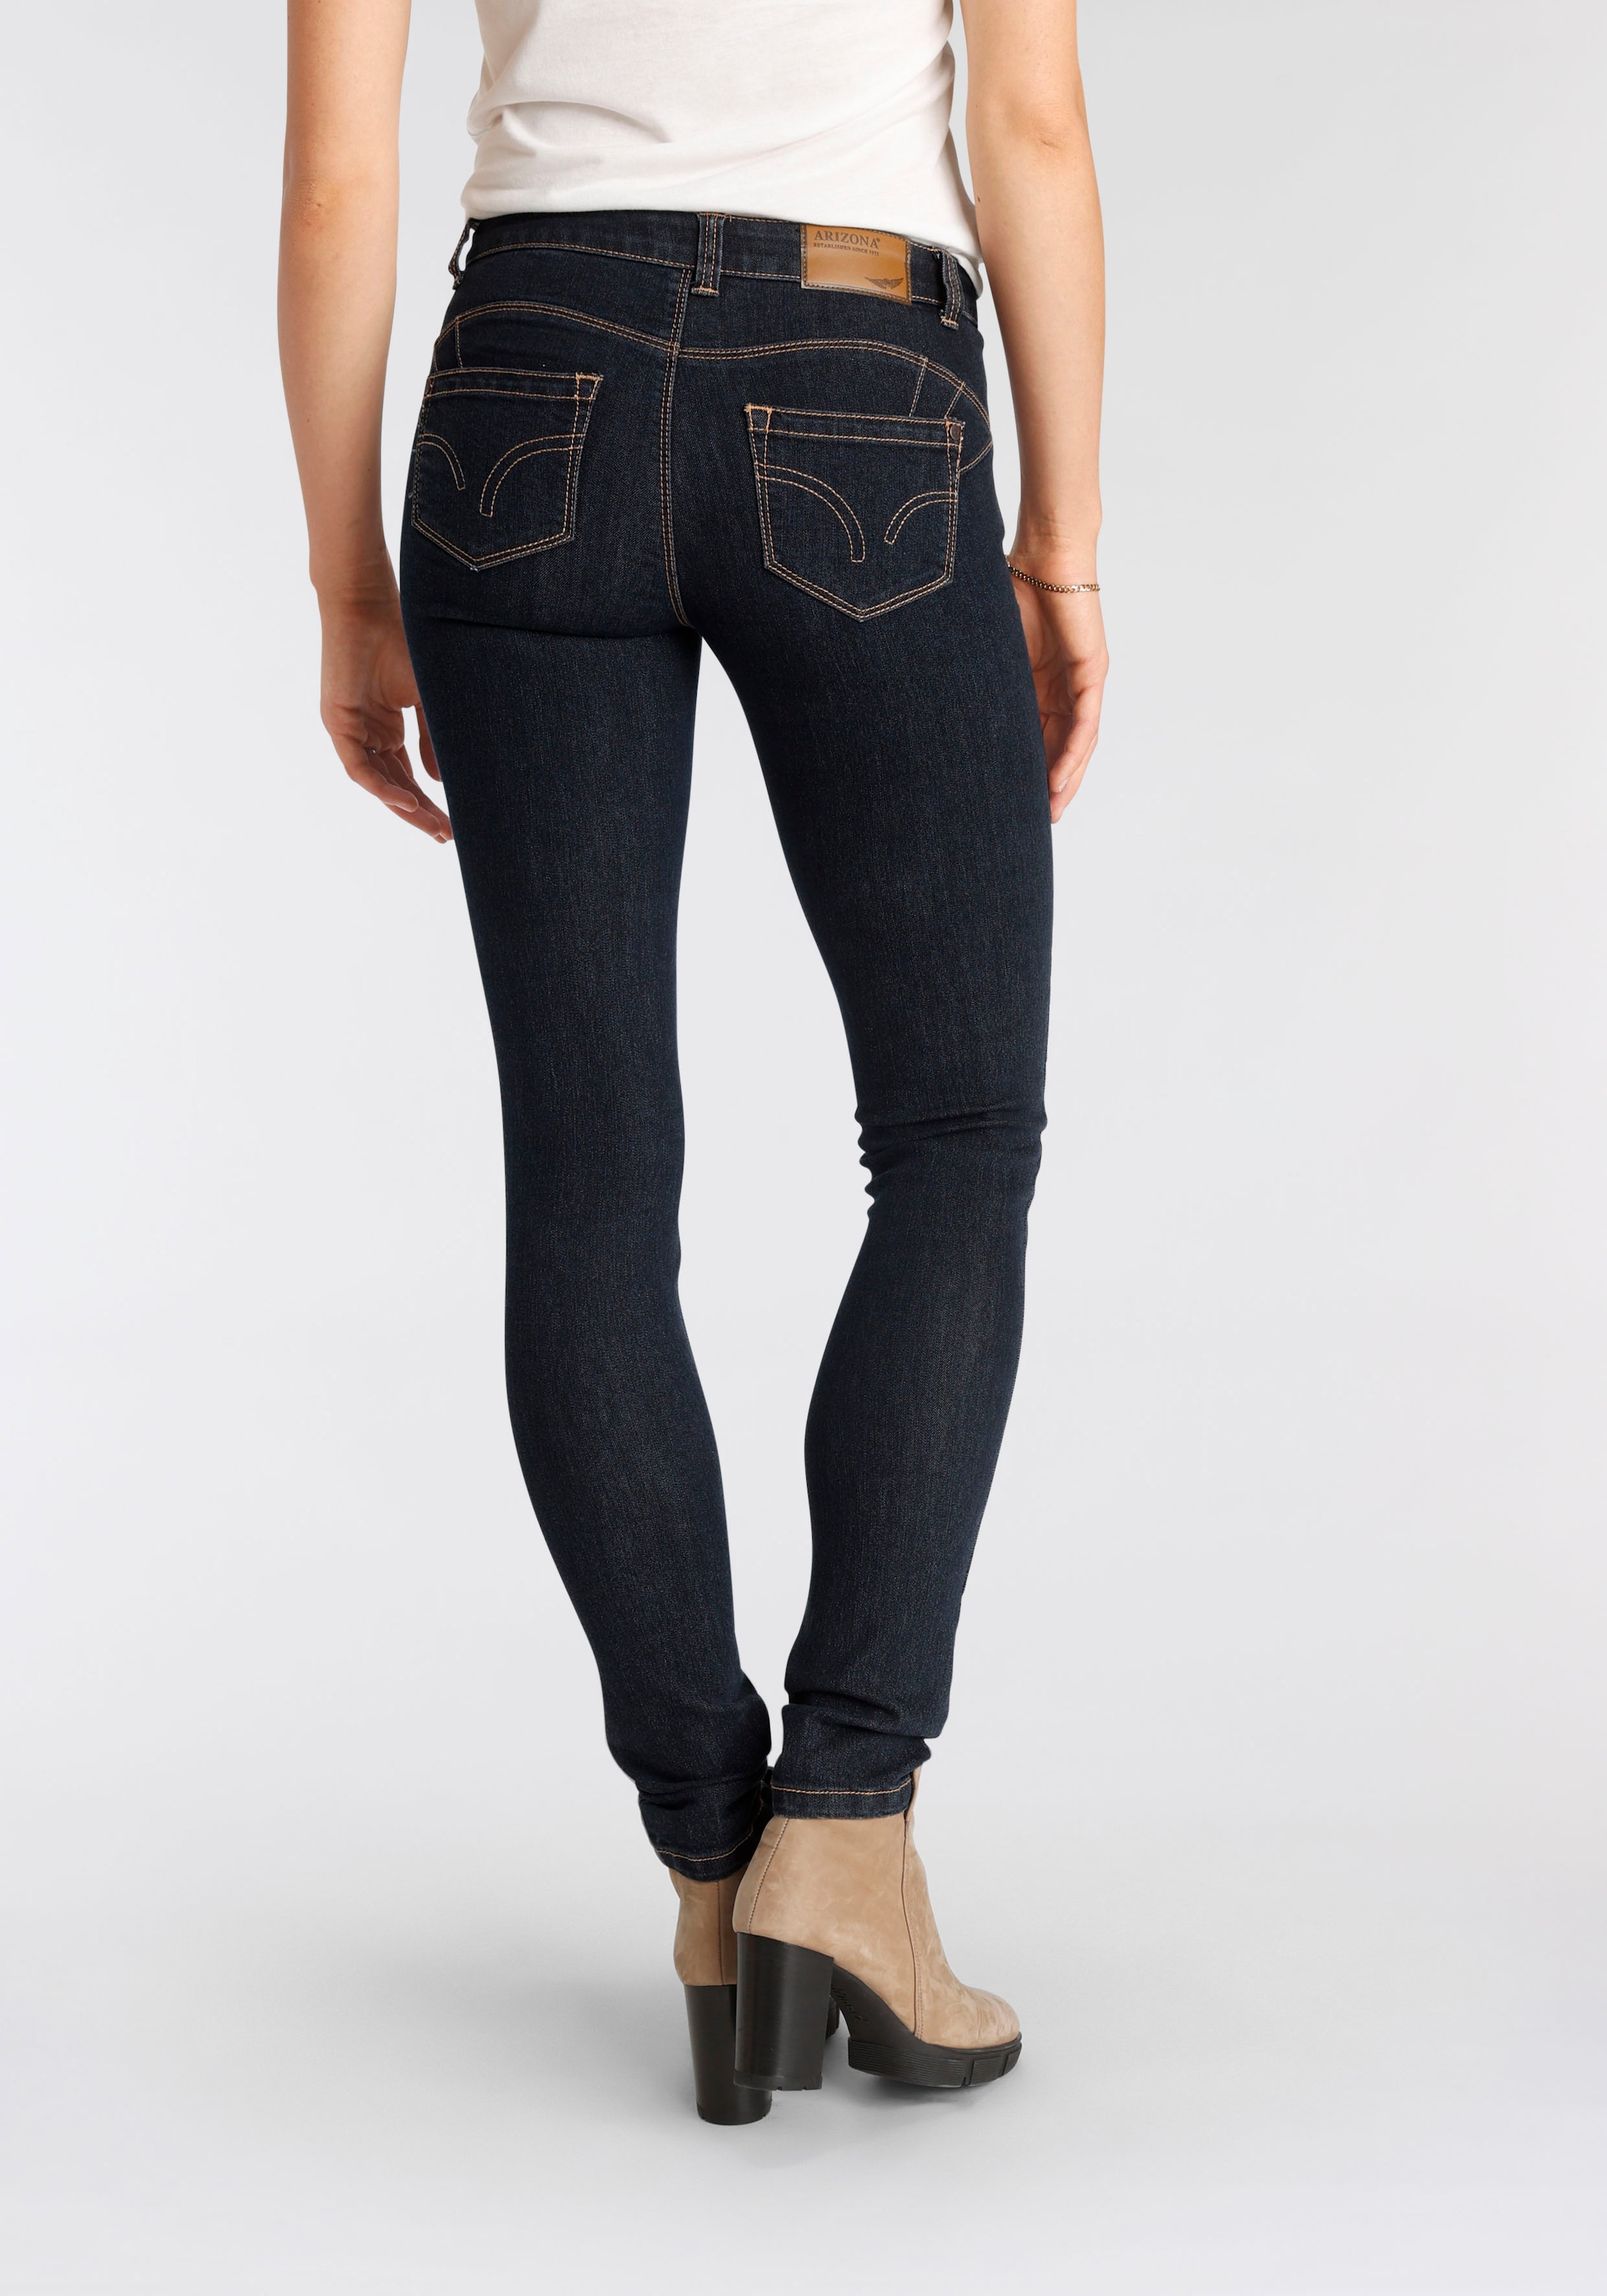 Jeans Nachhaltige bestellen Damenmode online - günstige